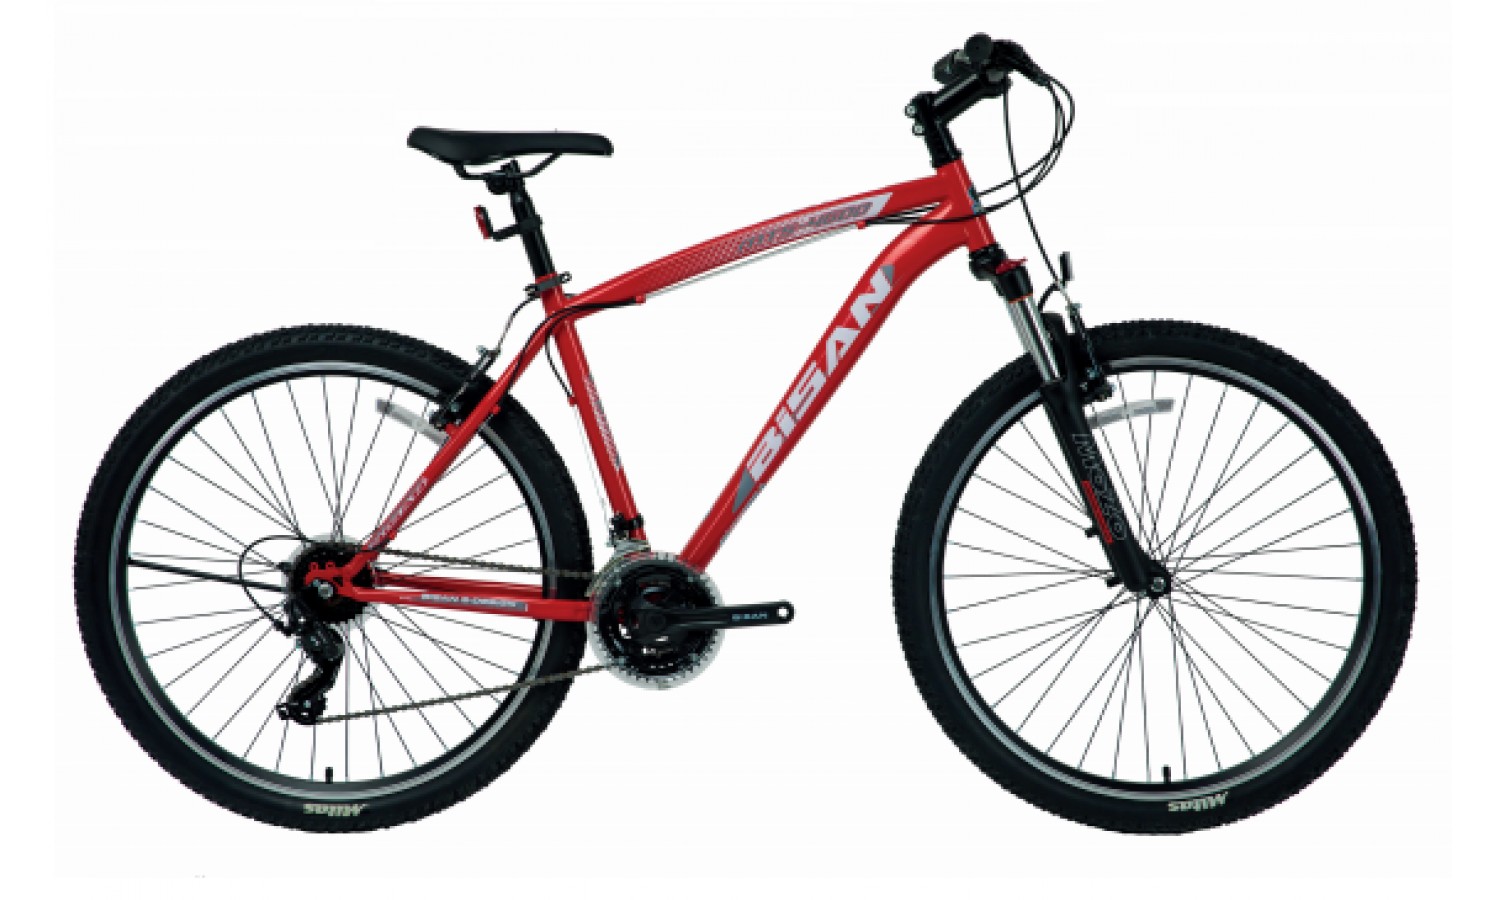 Bisan Mts 4600 24 V Dağ Bisikleti (Neon Turuncu-Siyah)